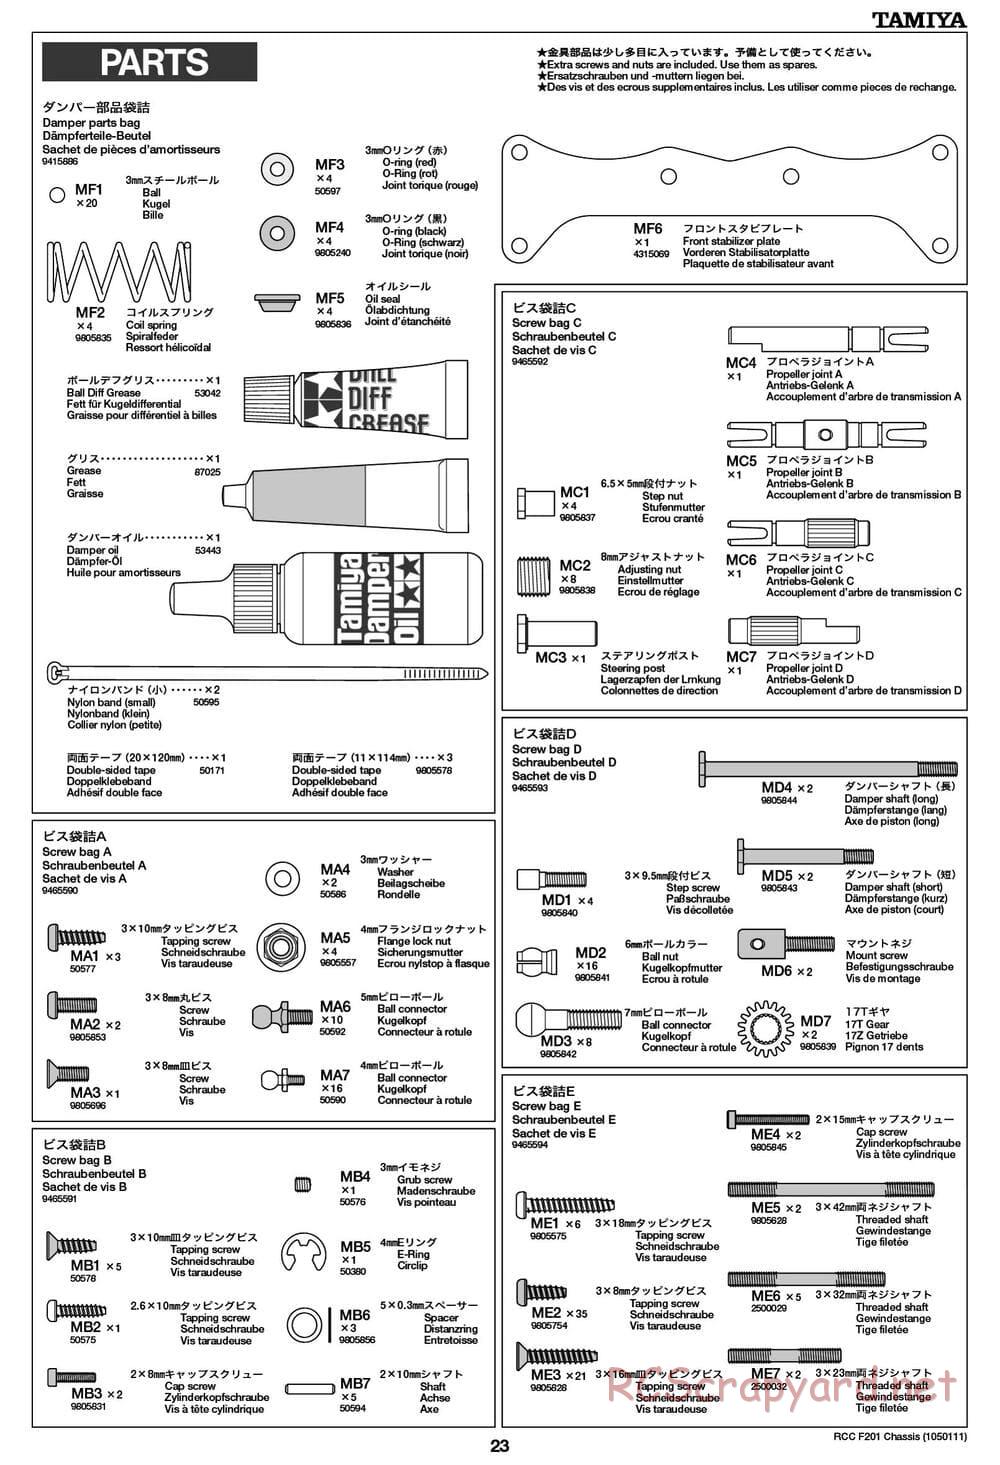 Tamiya - F201 Chassis - Manual - Page 23